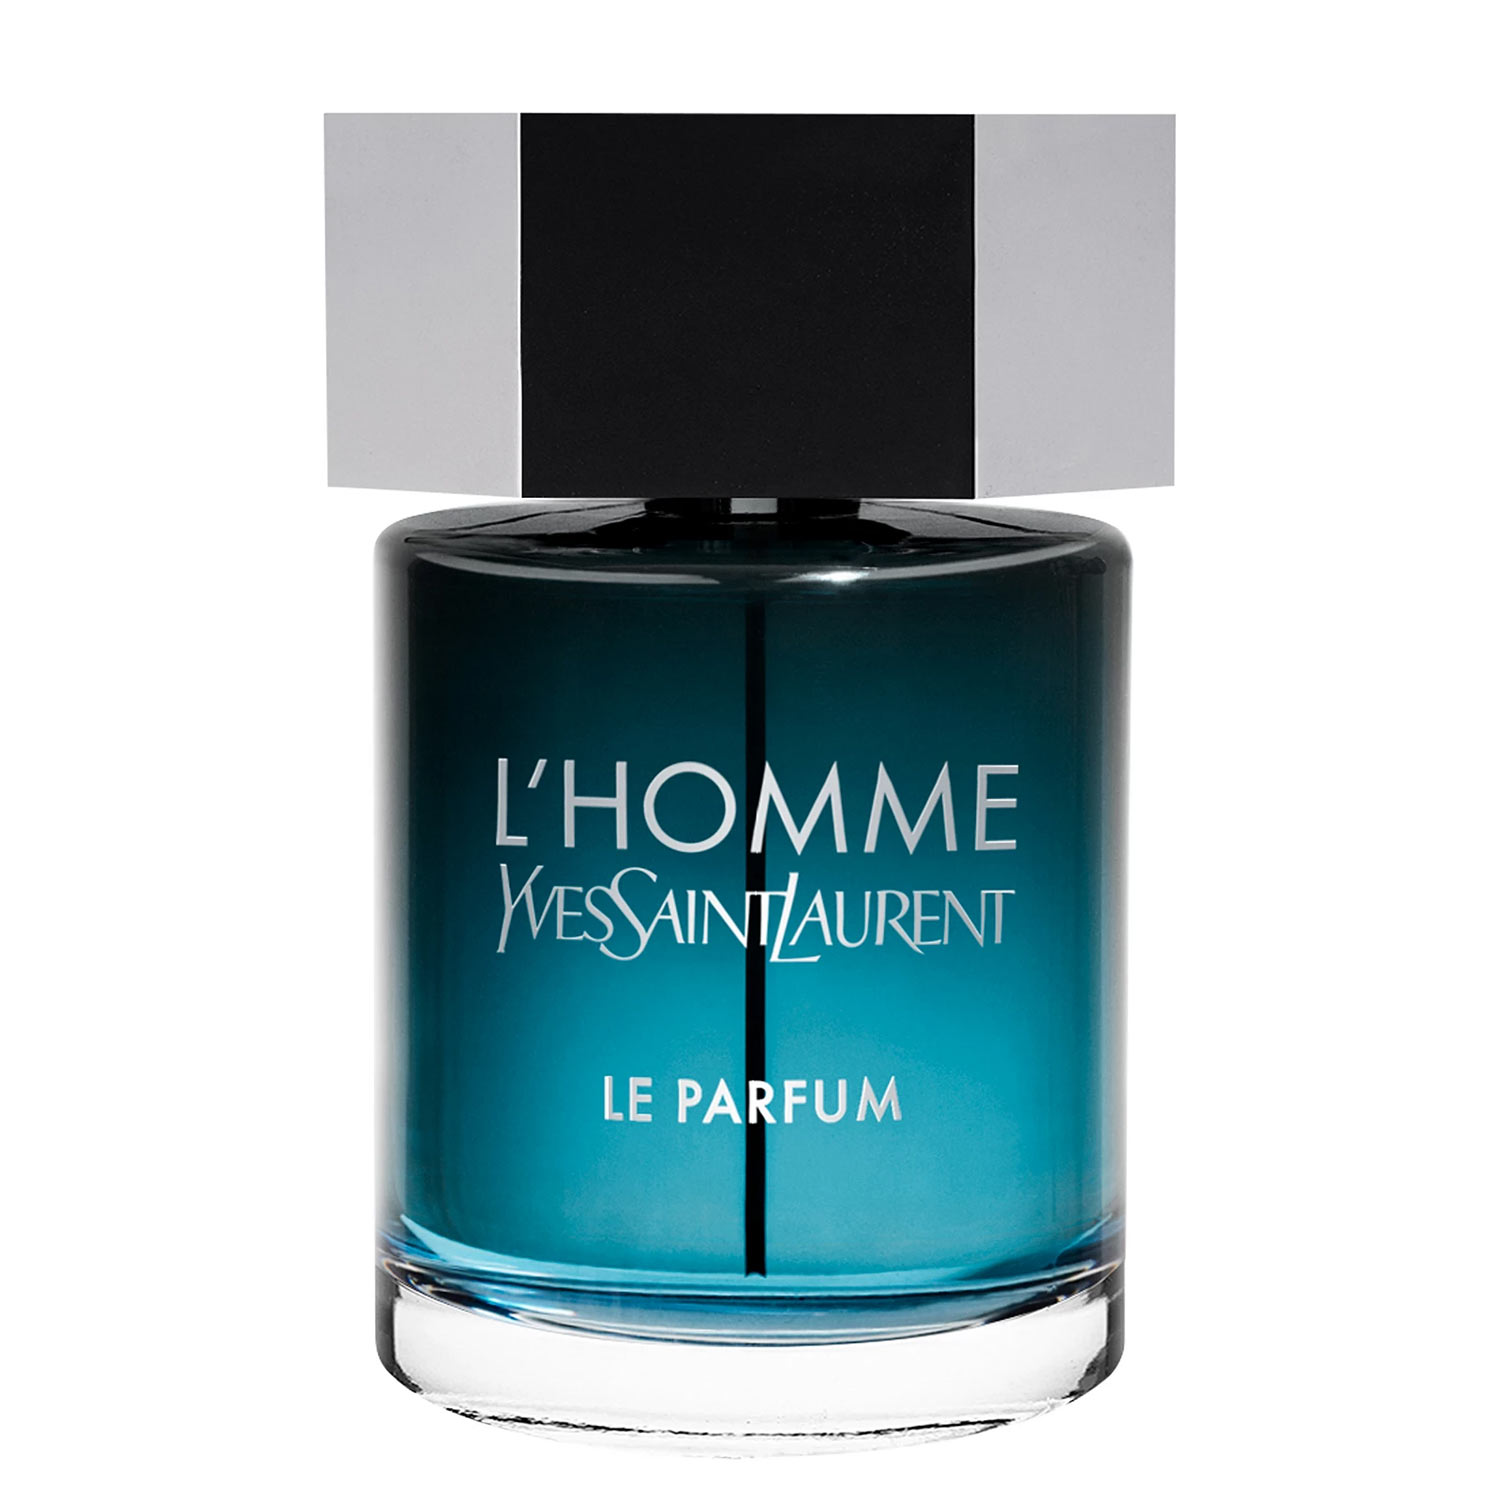 L'Homme Le Parfum Yves Saint Laurent Image